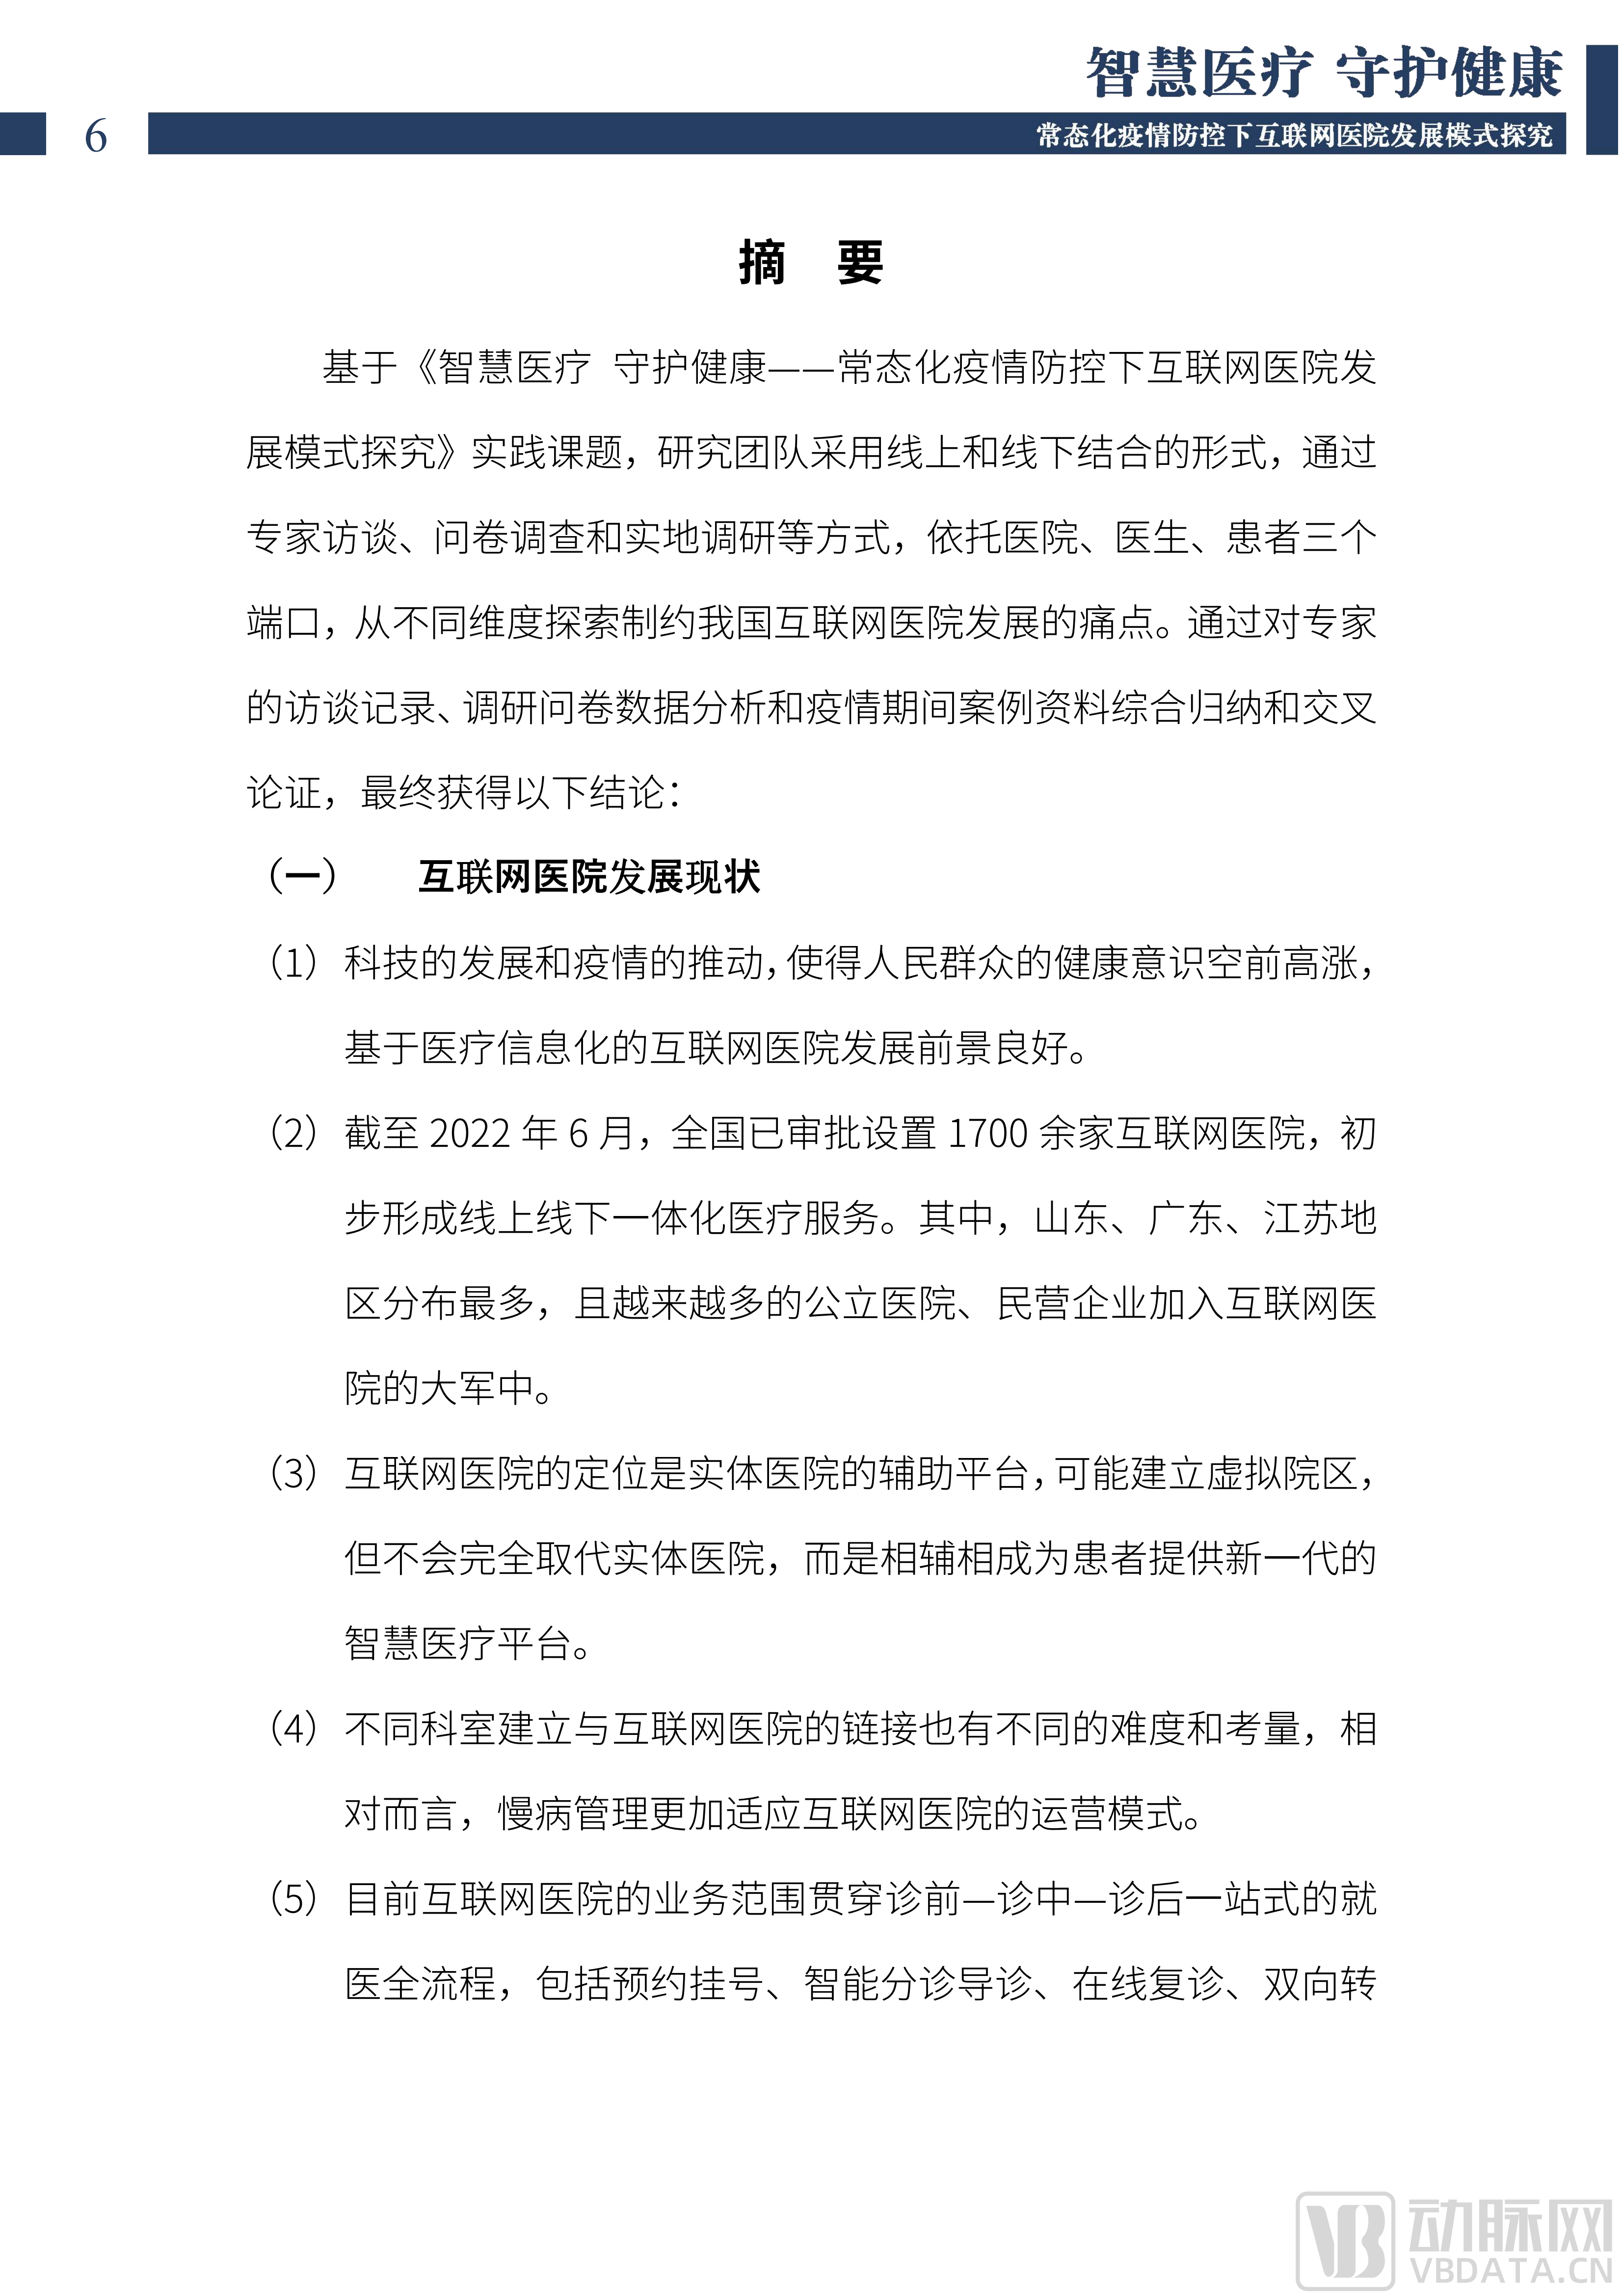 2022中国互联网医院发展调研报告(1)_07.png